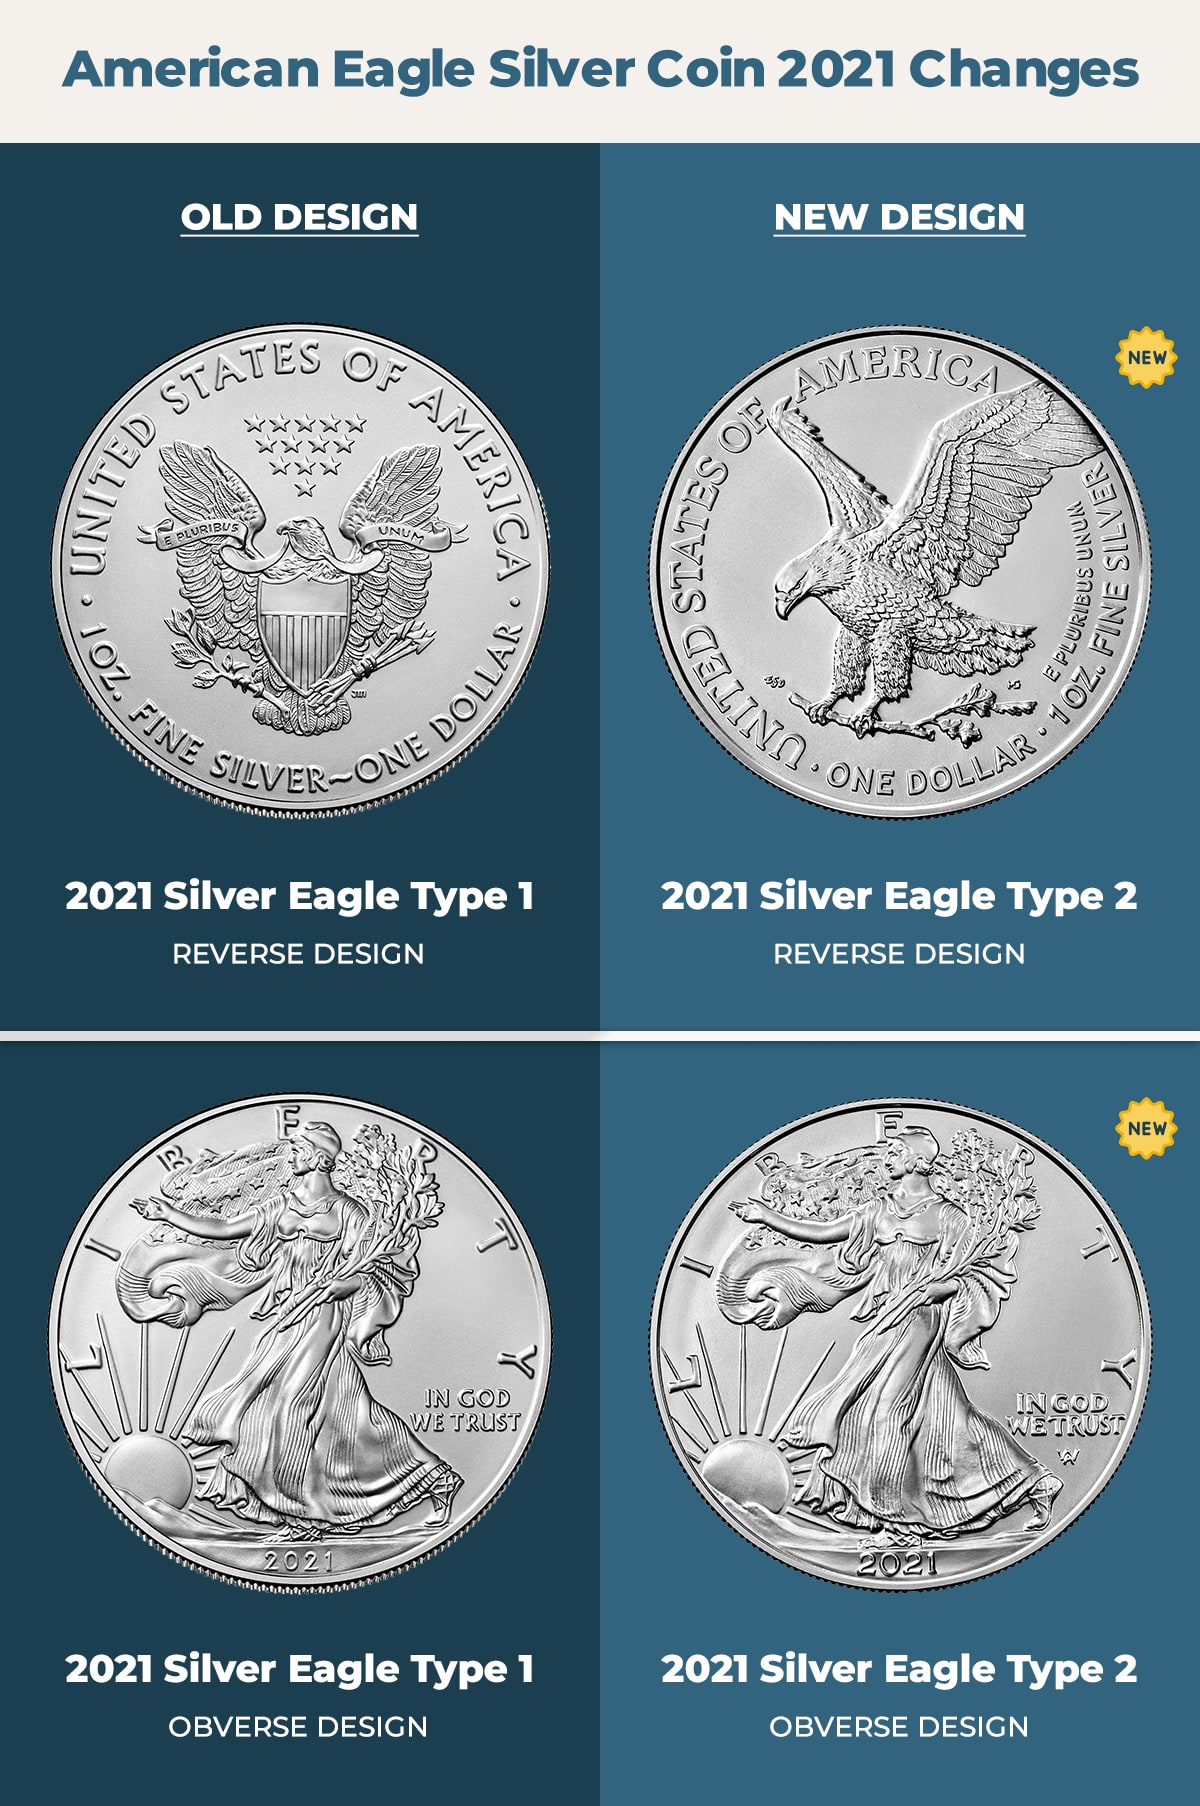 2021 silver eagle new design vs old design